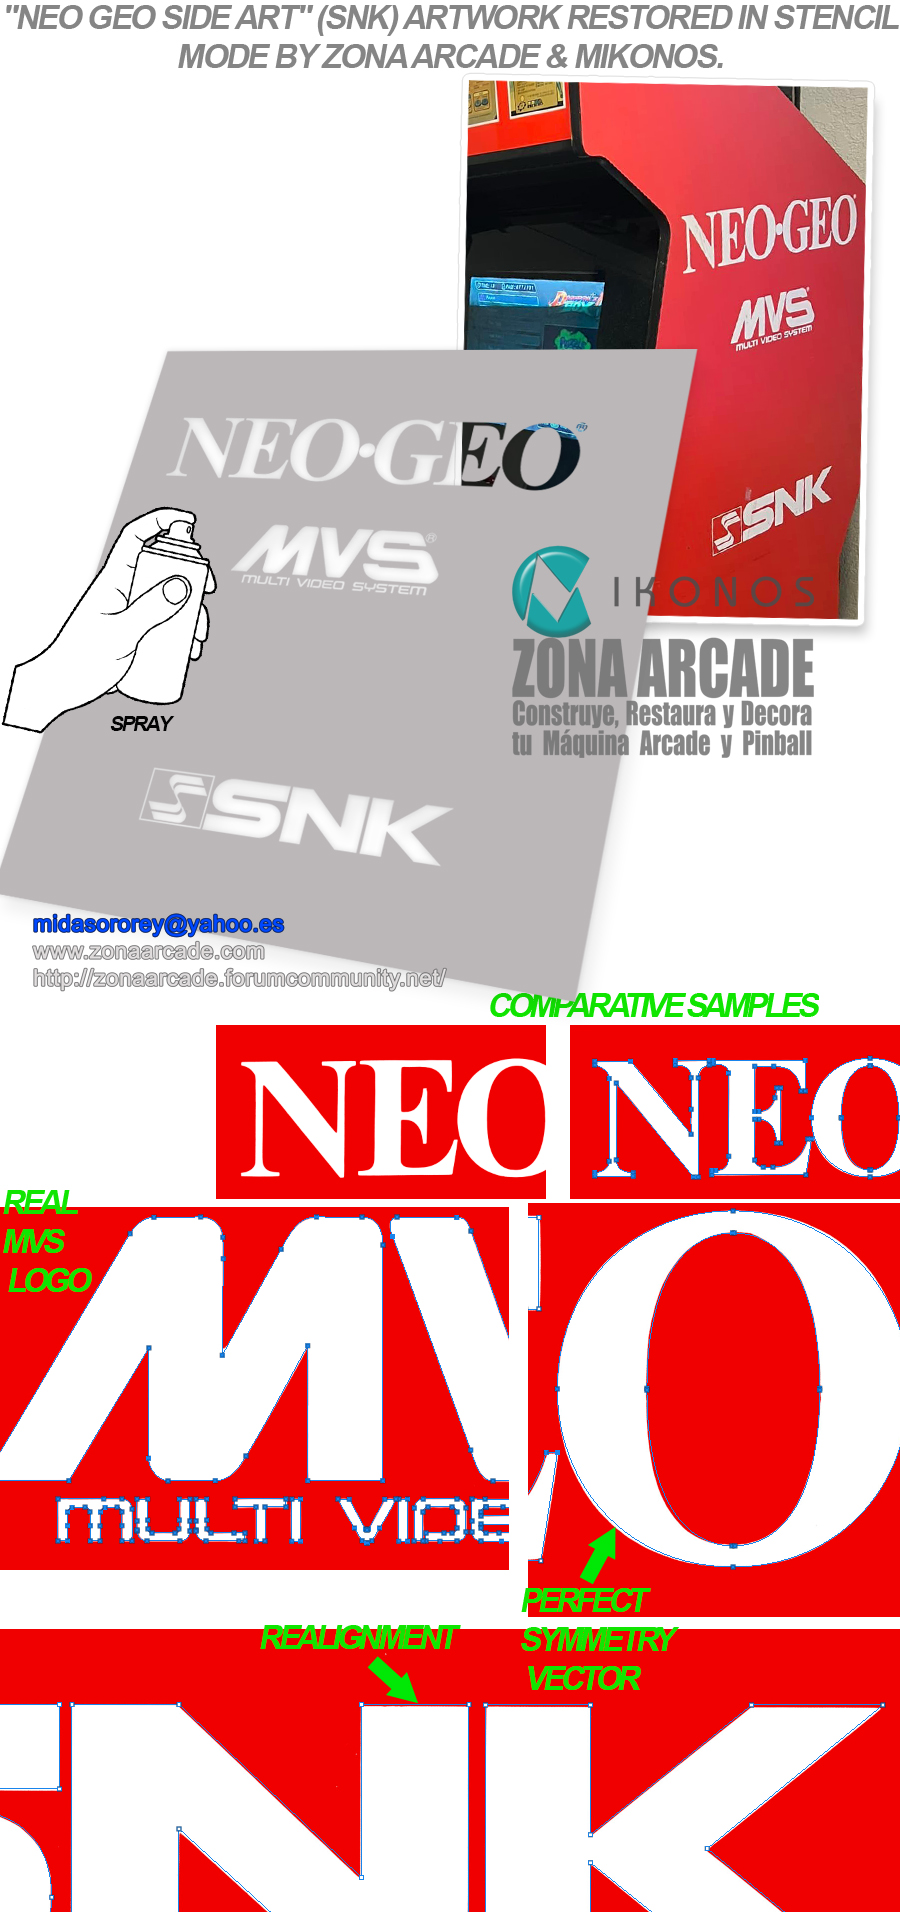 Neo-Geo-Main-Side-Art-Stencil-Restored-Mikonos1